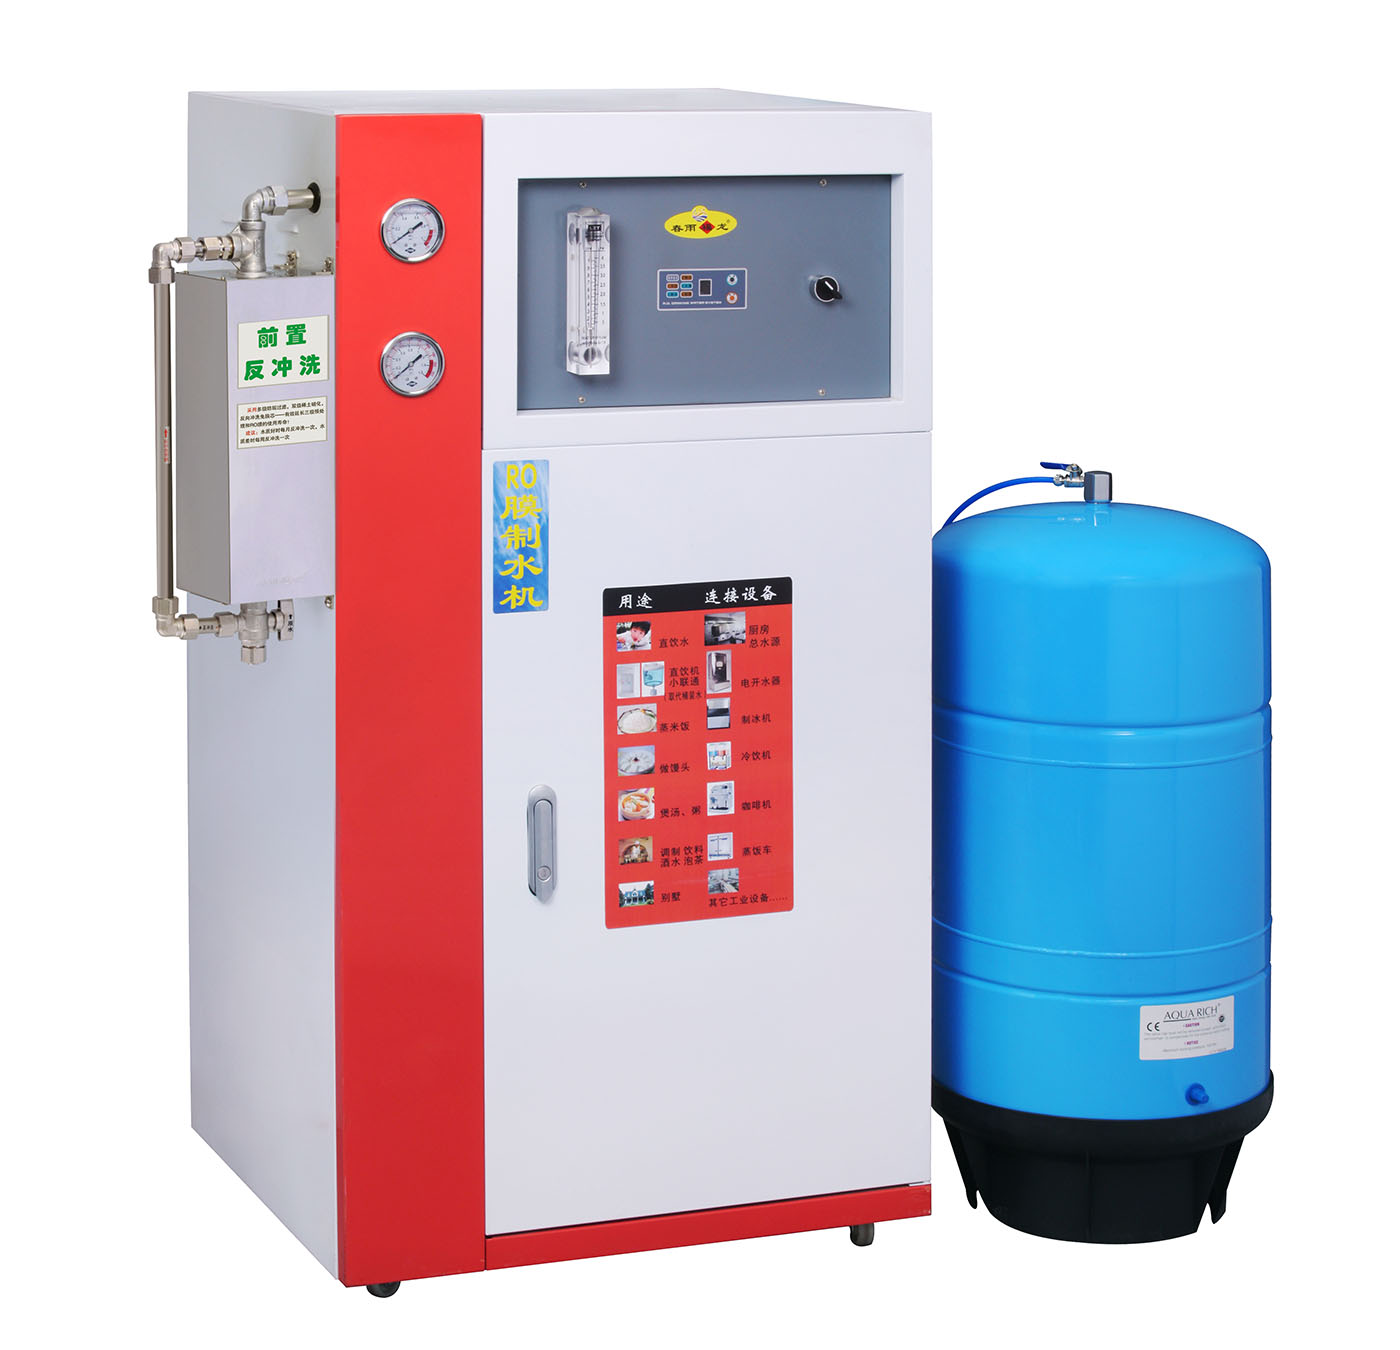 春雨福龙CY-B600W型商用RO膜反渗透纯水机(直饮机) 600加仑/天 标配20加仑储水罐